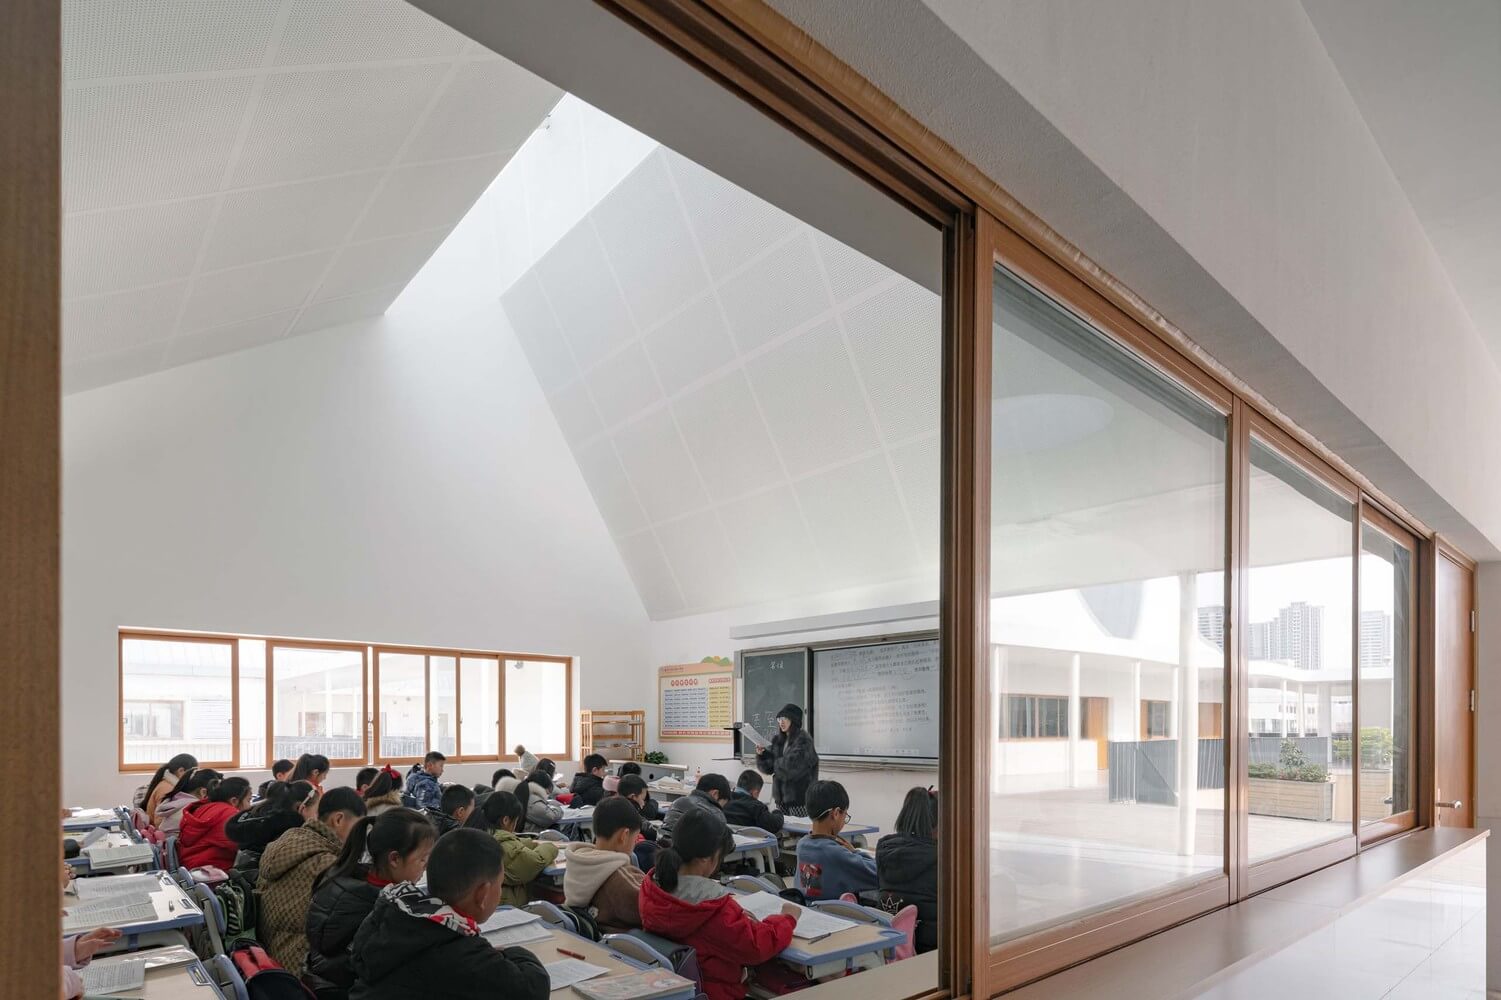 Một lớp học tập bên trên ngôi trường tè học tập Qingyijiang, Trung Quốc theo đuổi phong thái tối giản